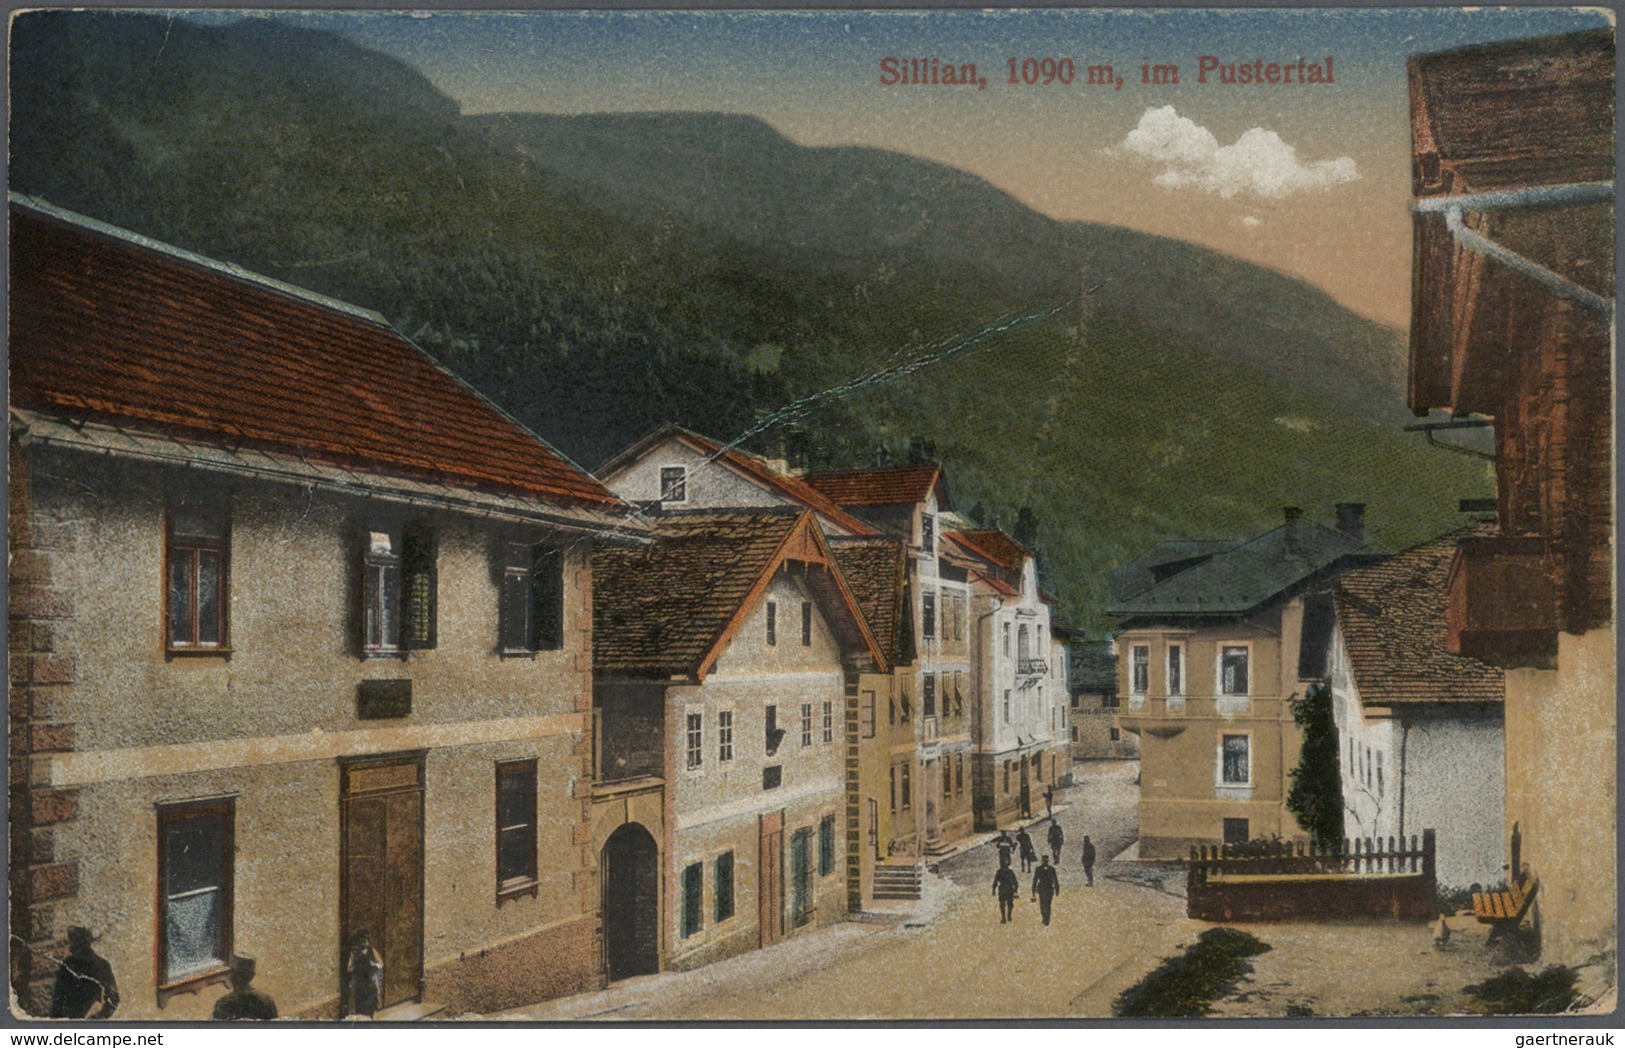 Ansichtskarten: Alle Welt: ITALIEN - 1898/1935, Südtirol / Alto Adige. Feinst nach Orten und Tälern